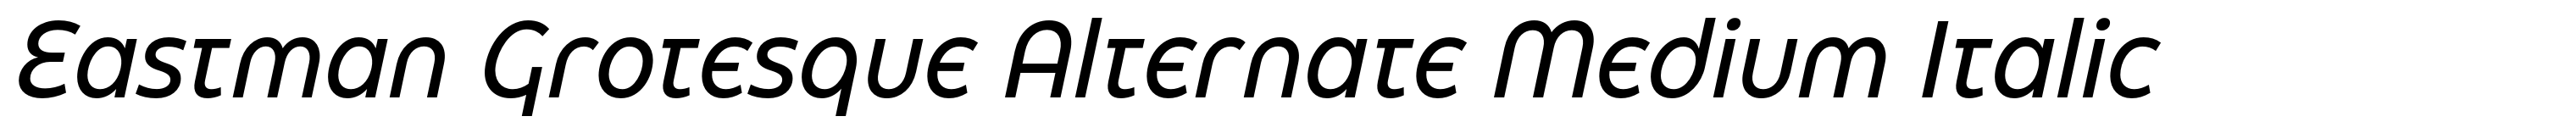 Eastman Grotesque Alternate Medium Italic